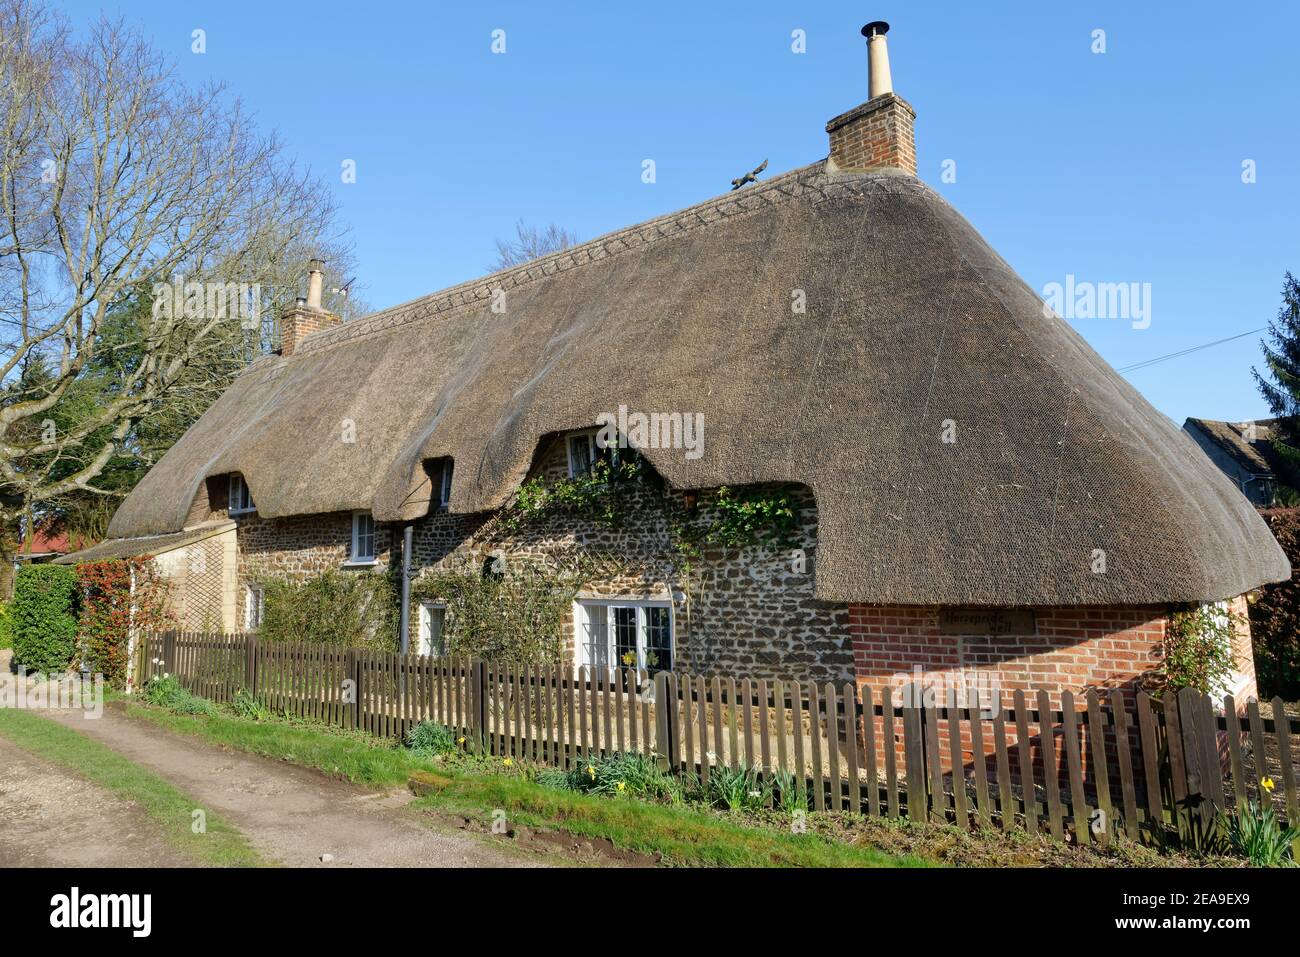 Maison traditionnelle de chaume, Sandy Lane, près de Chippenham, Wiltshire, Royaume-Uni, mars 2020. Banque D'Images